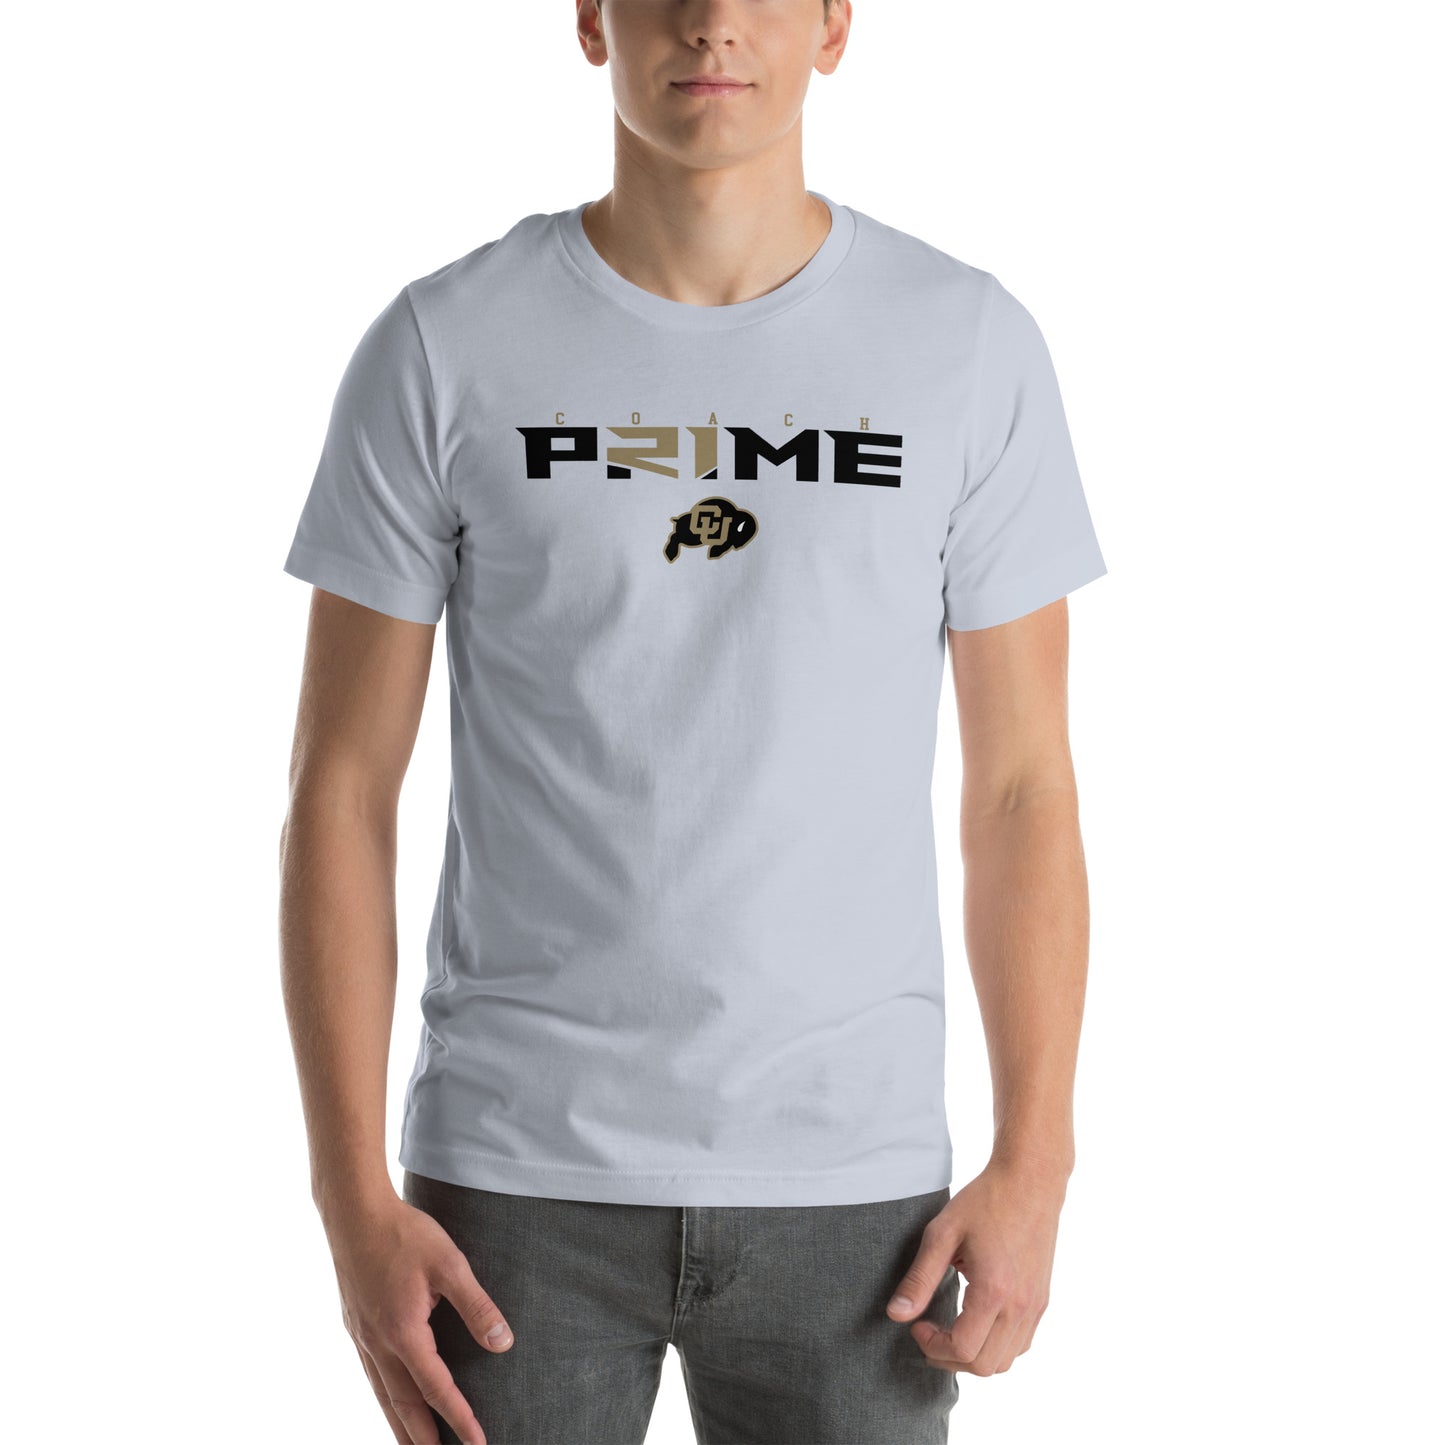 Prime t-shirt